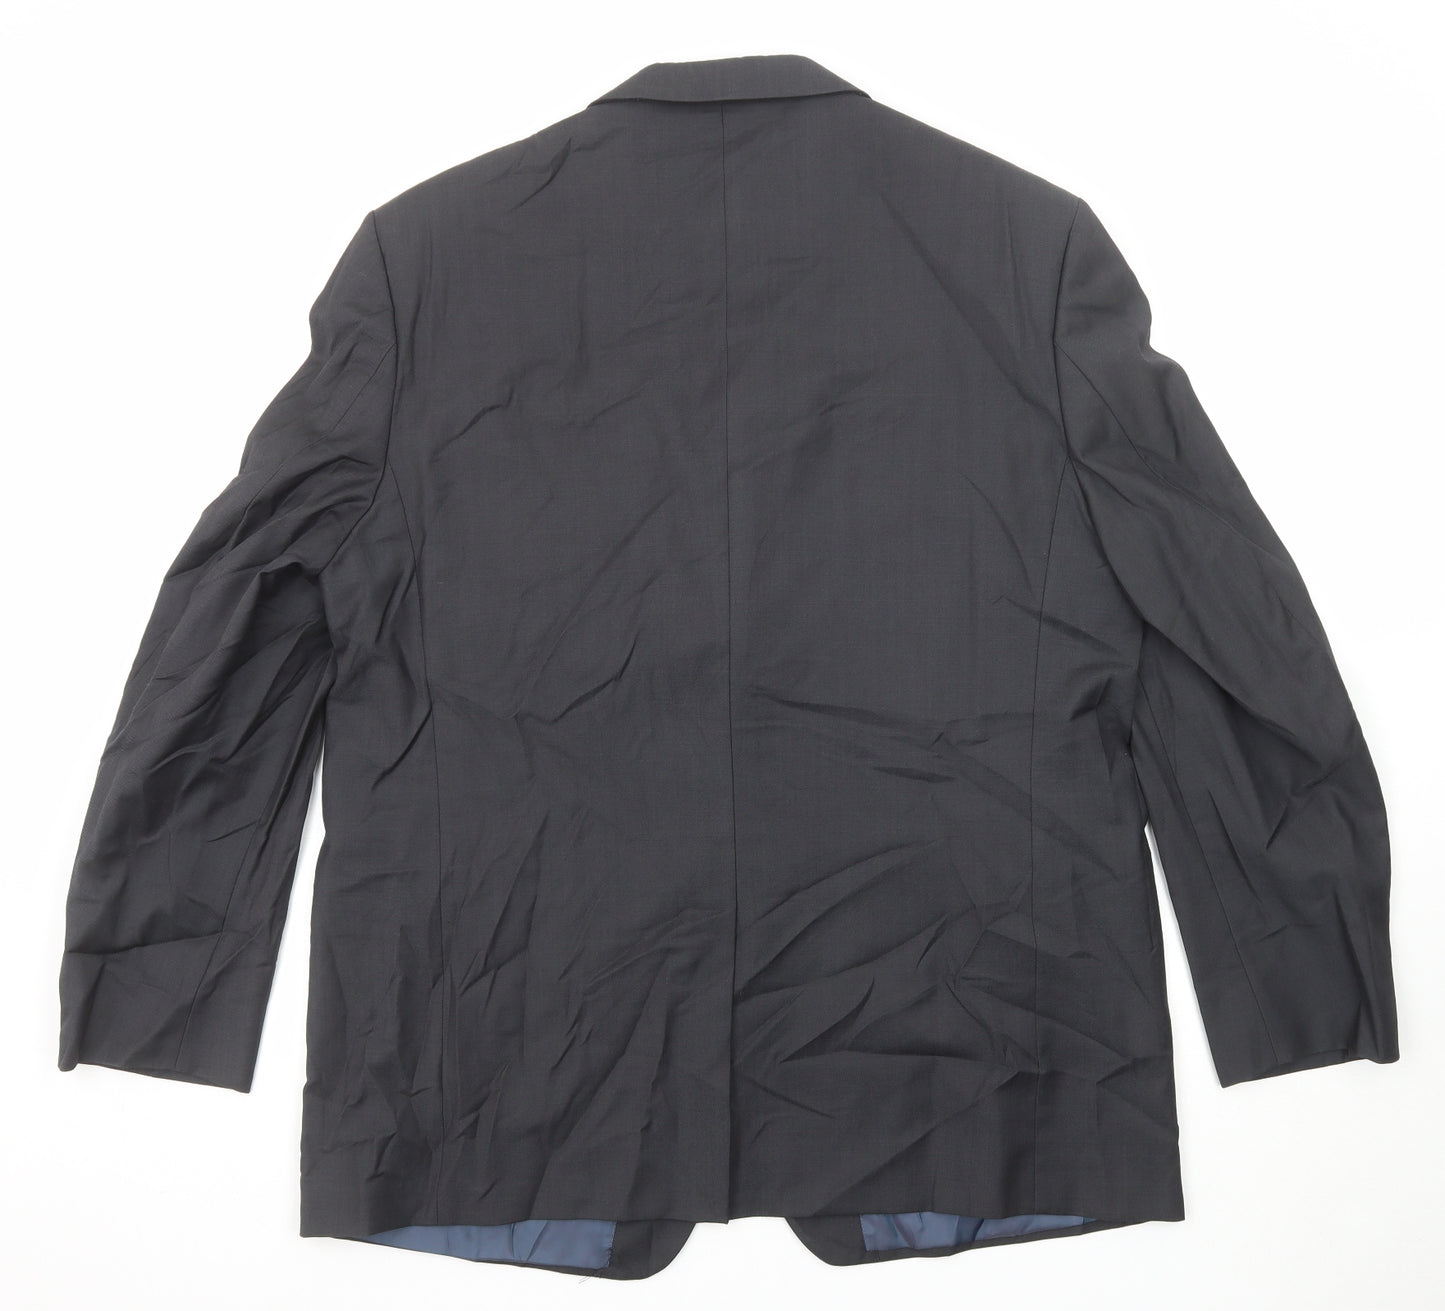 Marks and Spencer Mens Grey Wool Jacket Suit Jacket Size 46 Regular